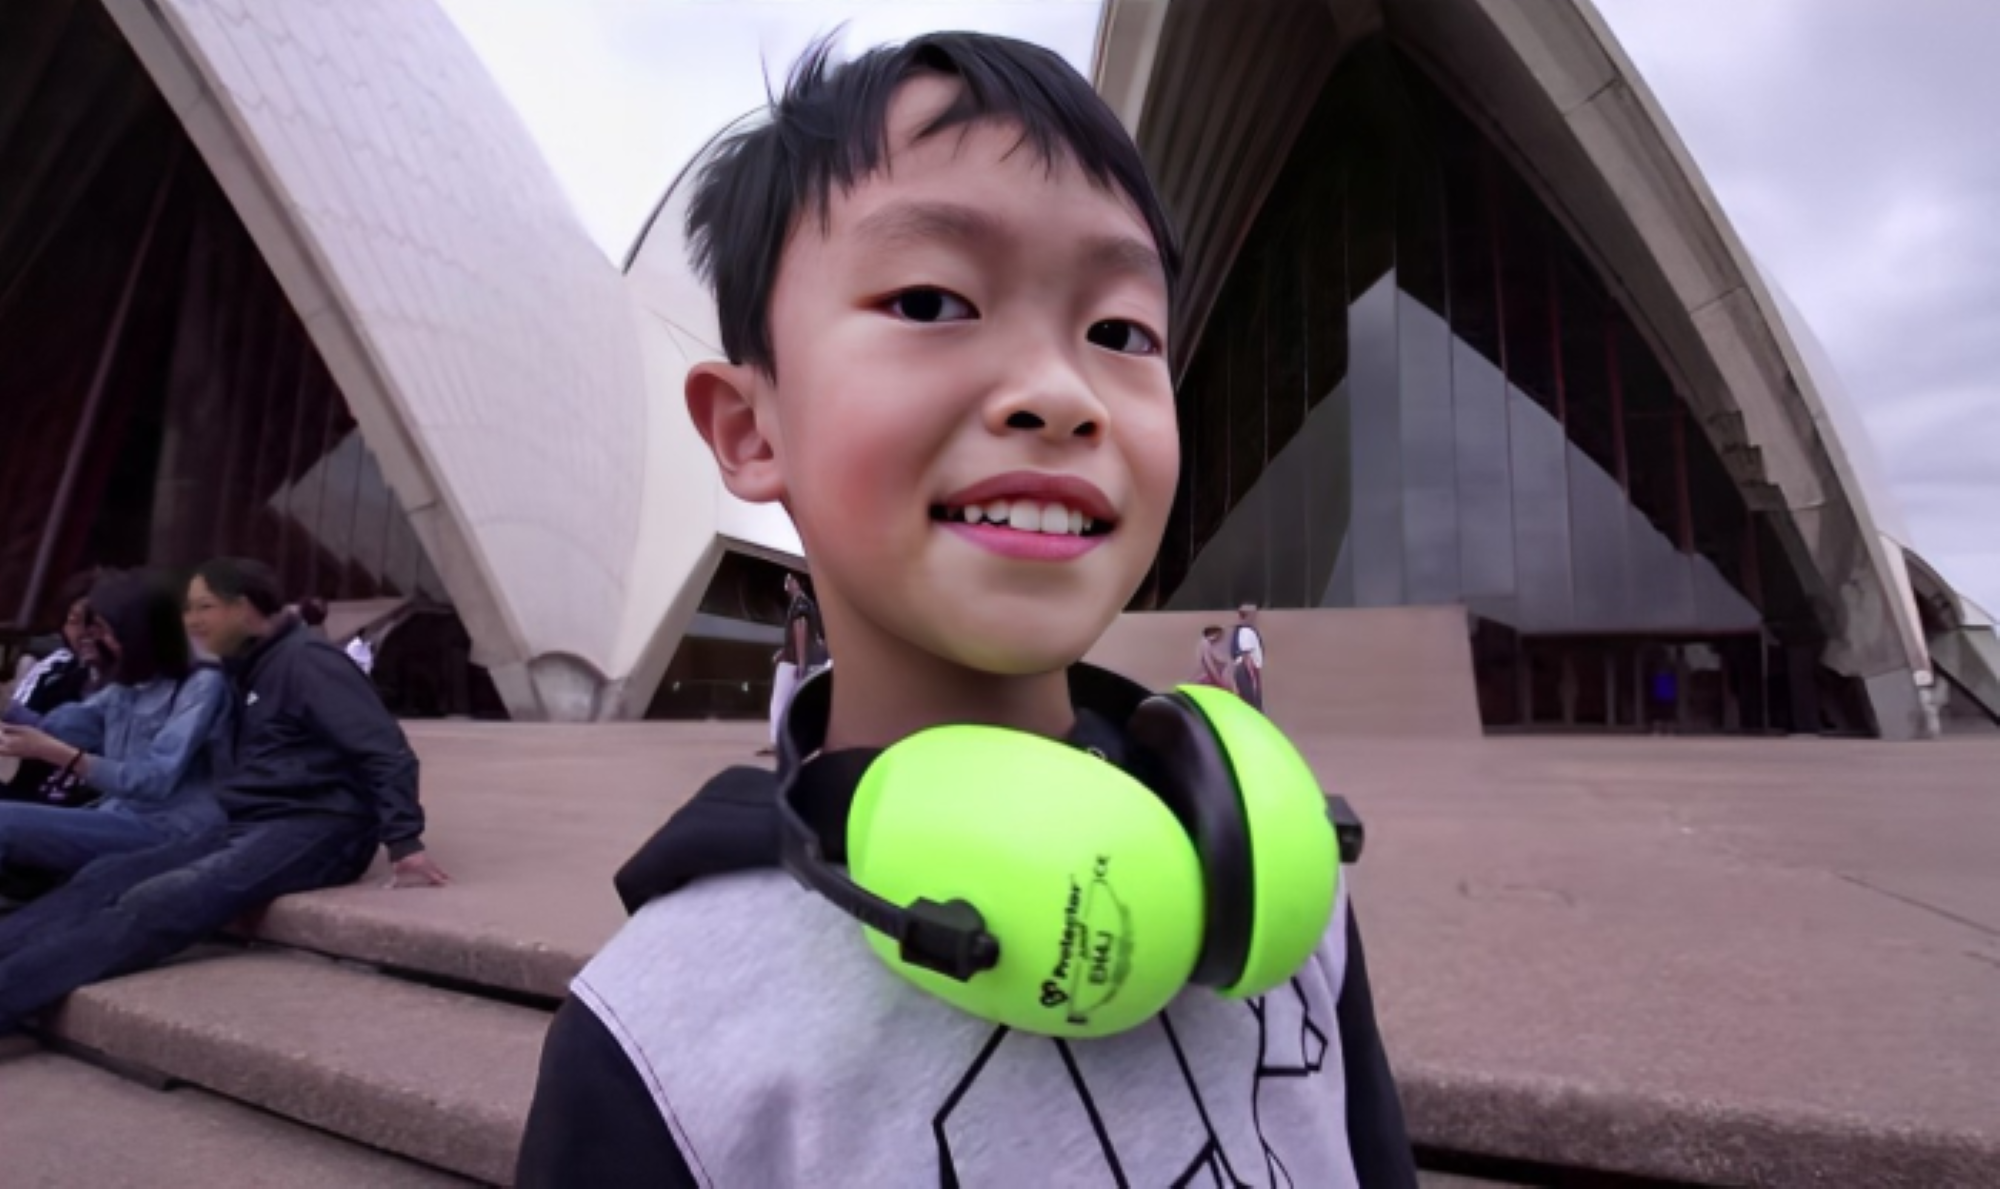 Lúc mới 4 tuổi, Seth Yee đã được chứng nhận ‘thiên tài’ với chỉ số IQ là 134, nằm trong top 1% trẻ em trên thế giới.